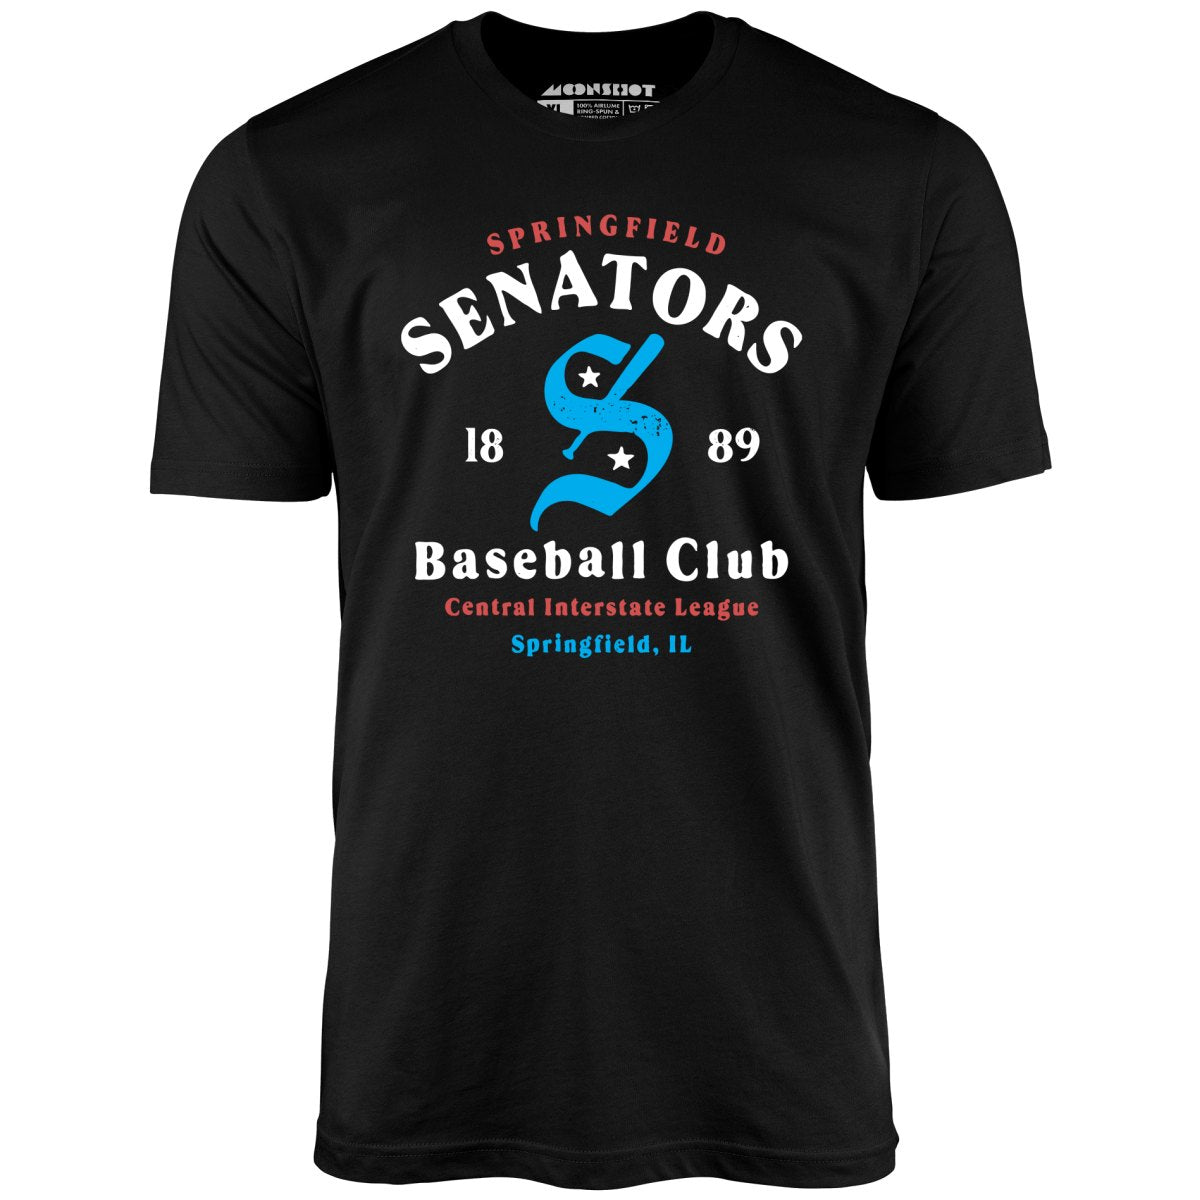 Springfield Senators - Illinois - Vintage Defunct Baseball Teams - Unisex T-Shirt